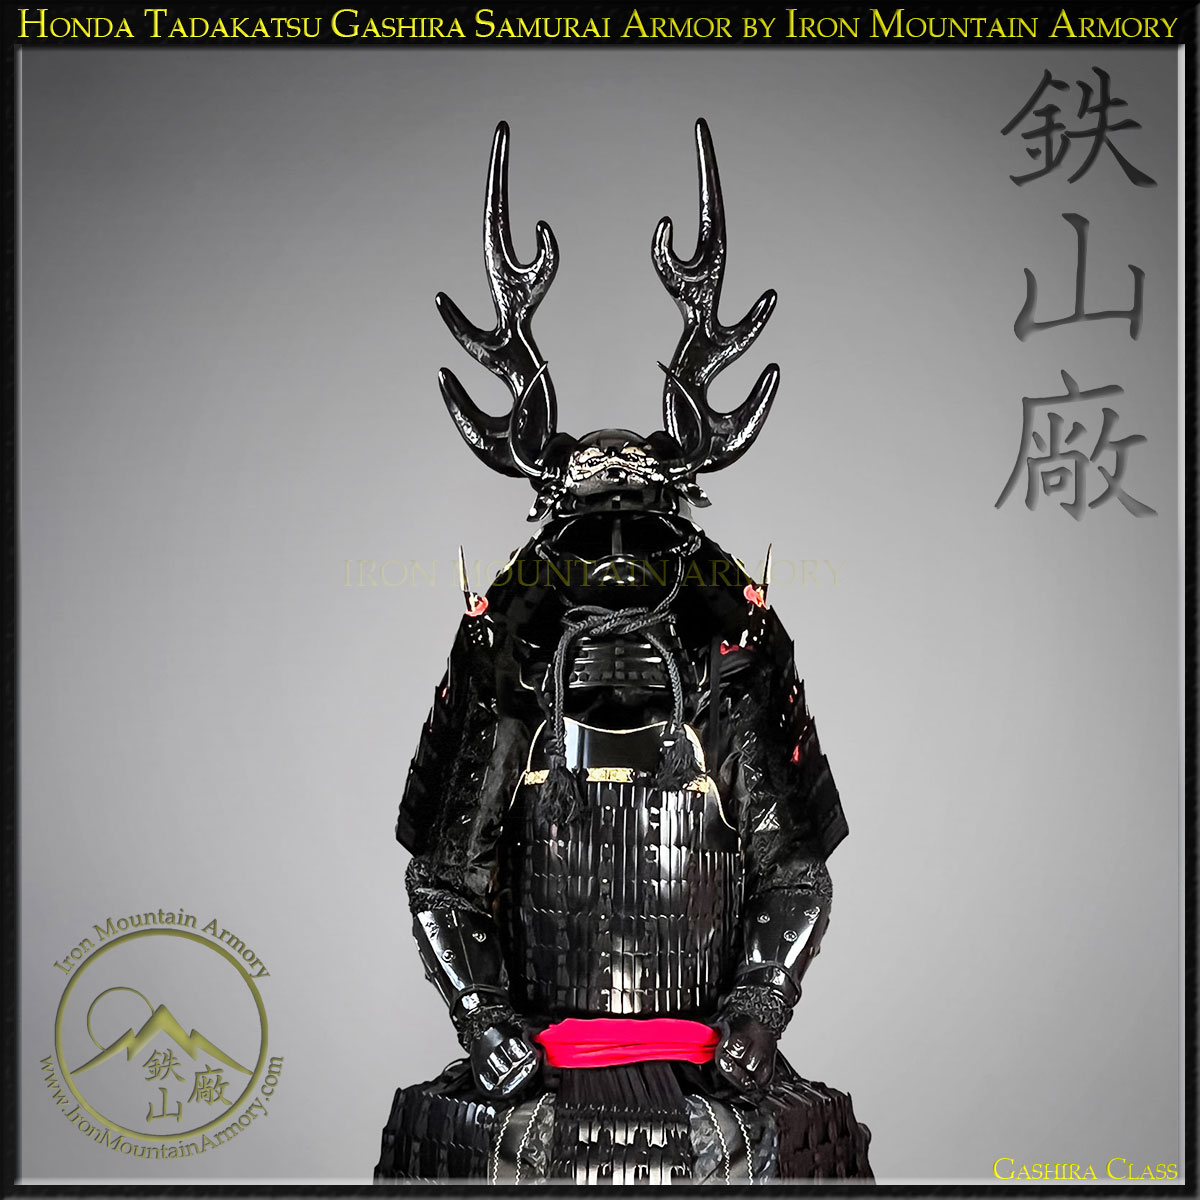 Honda Tadakatsu Gashira Samurai Armor